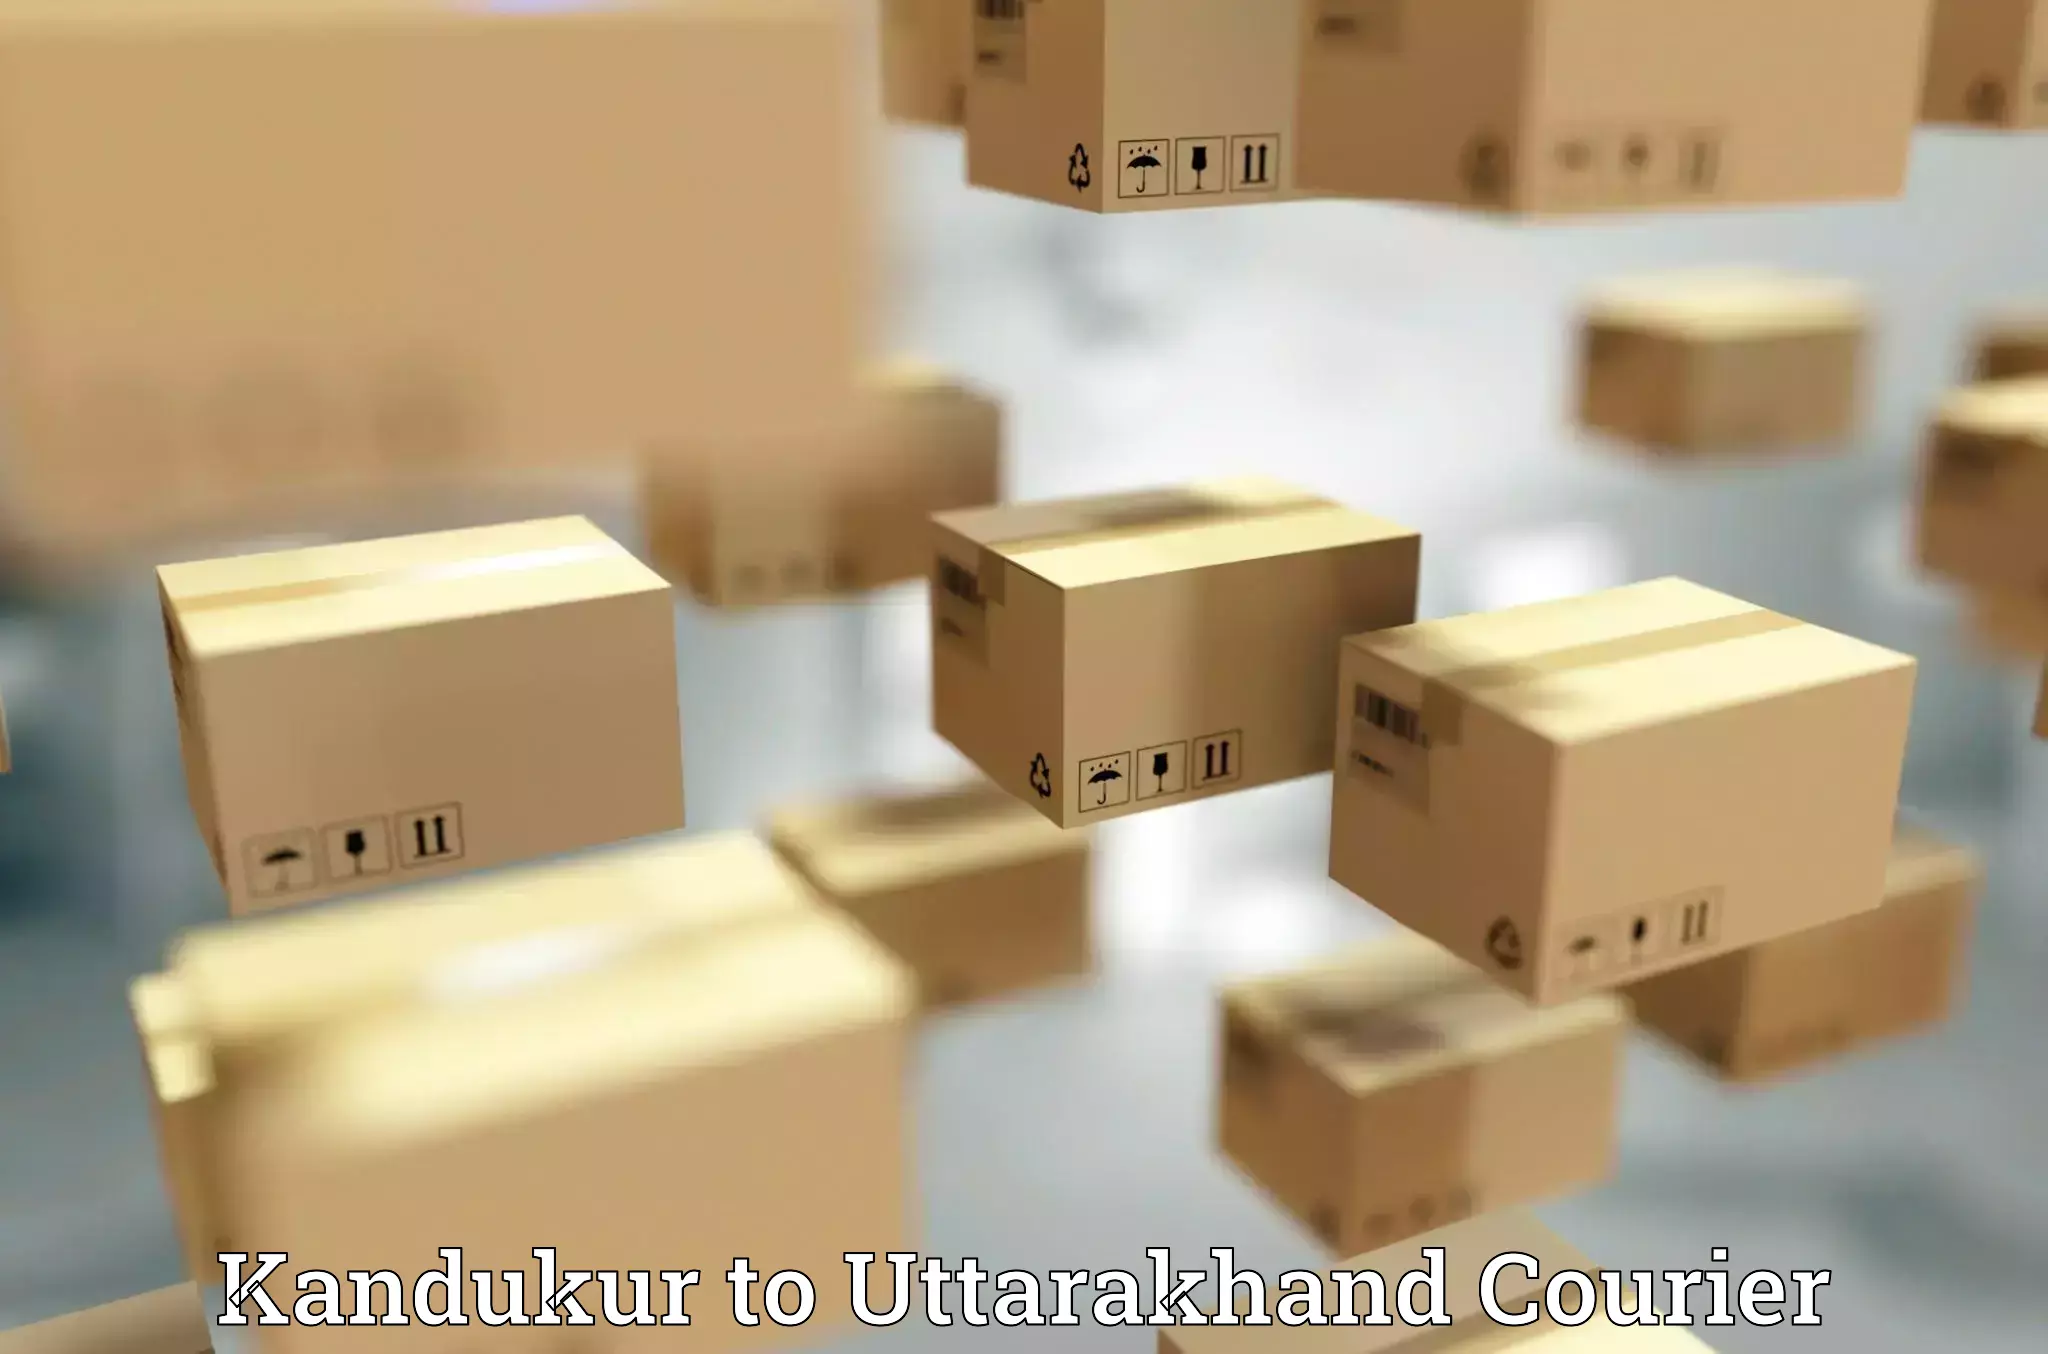 High-capacity shipping options Kandukur to Udham Singh Nagar